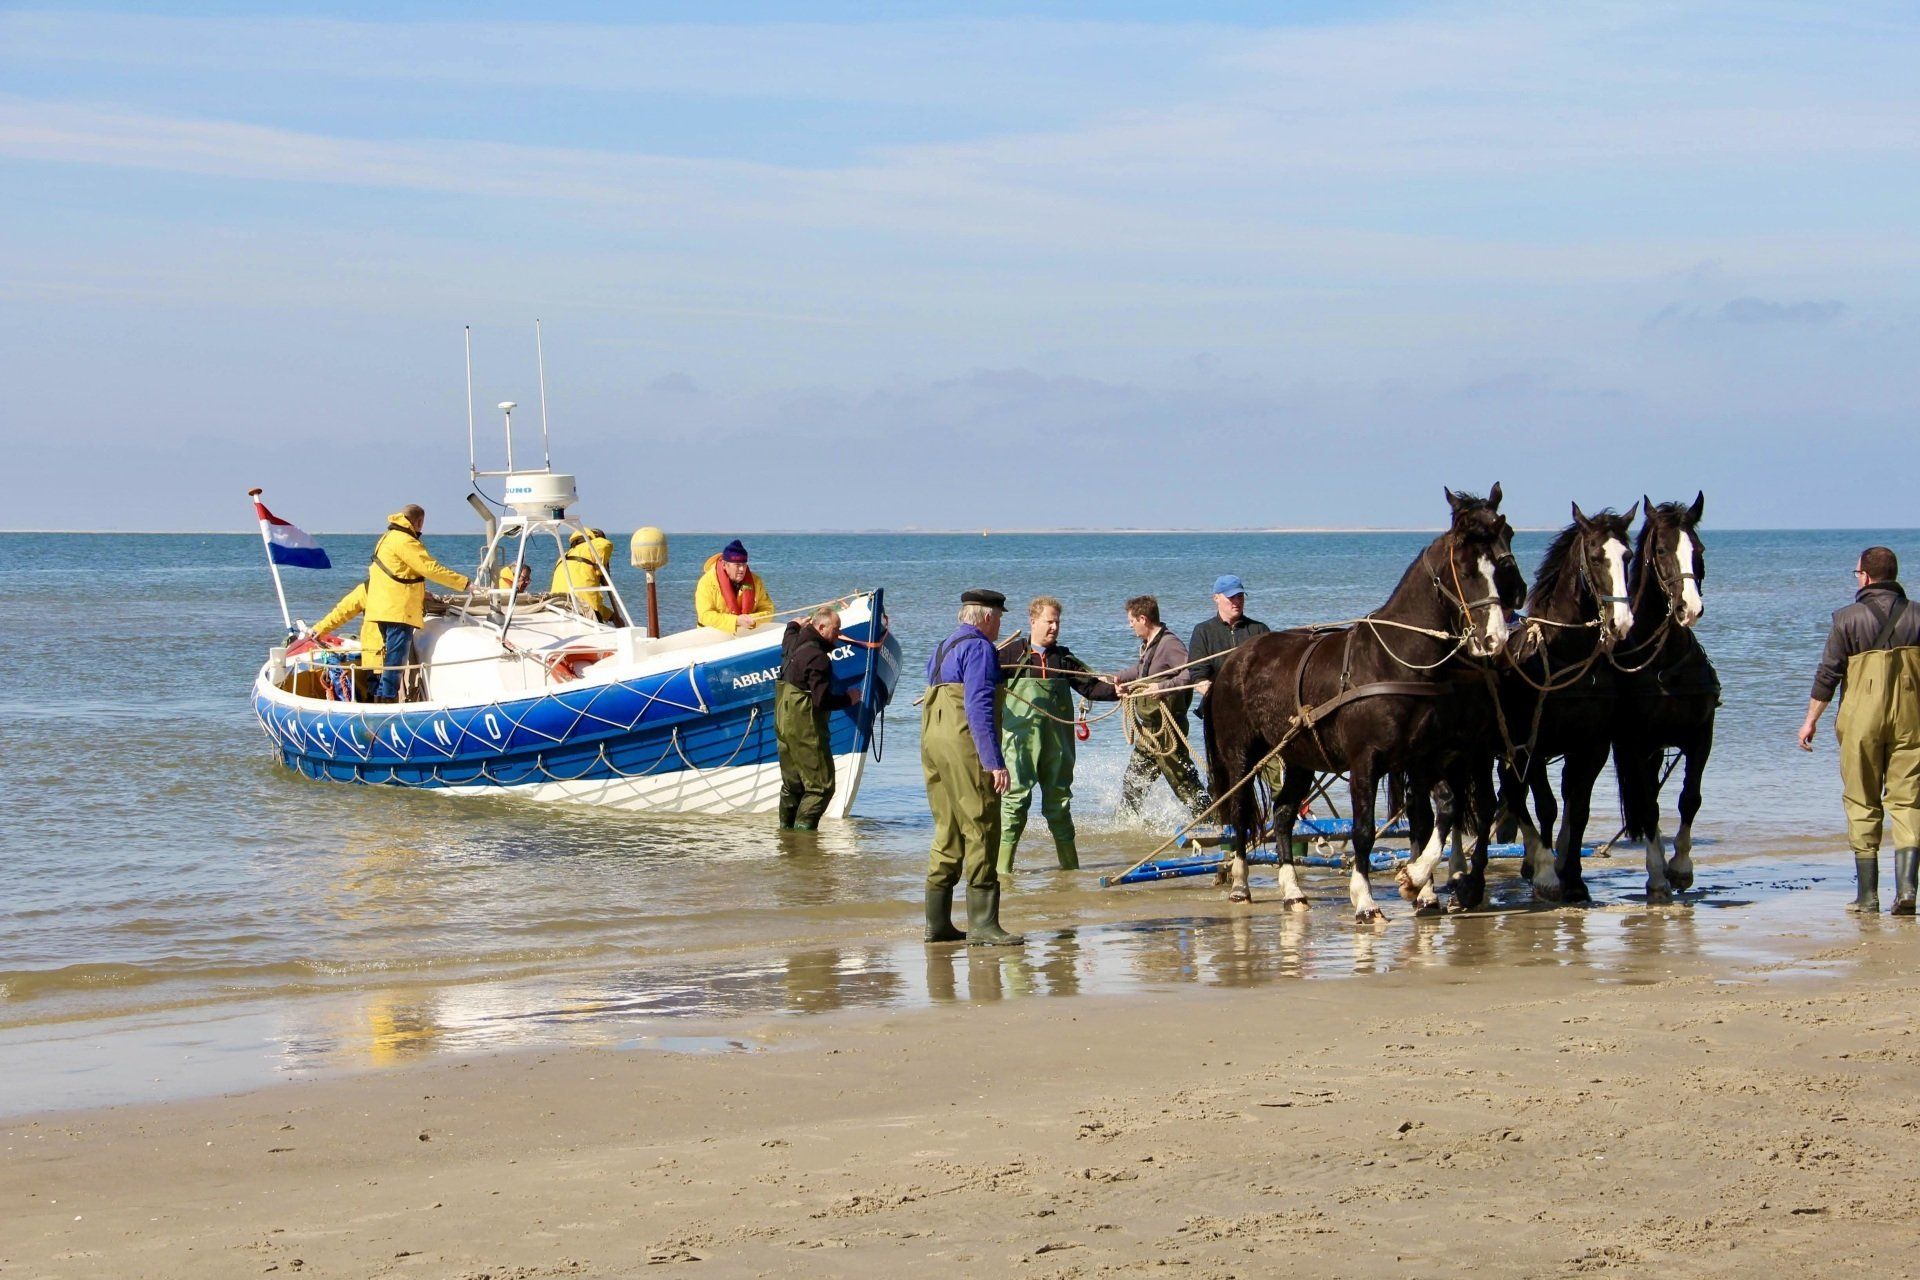 Demonstratie paardenreddingsboot Ameland